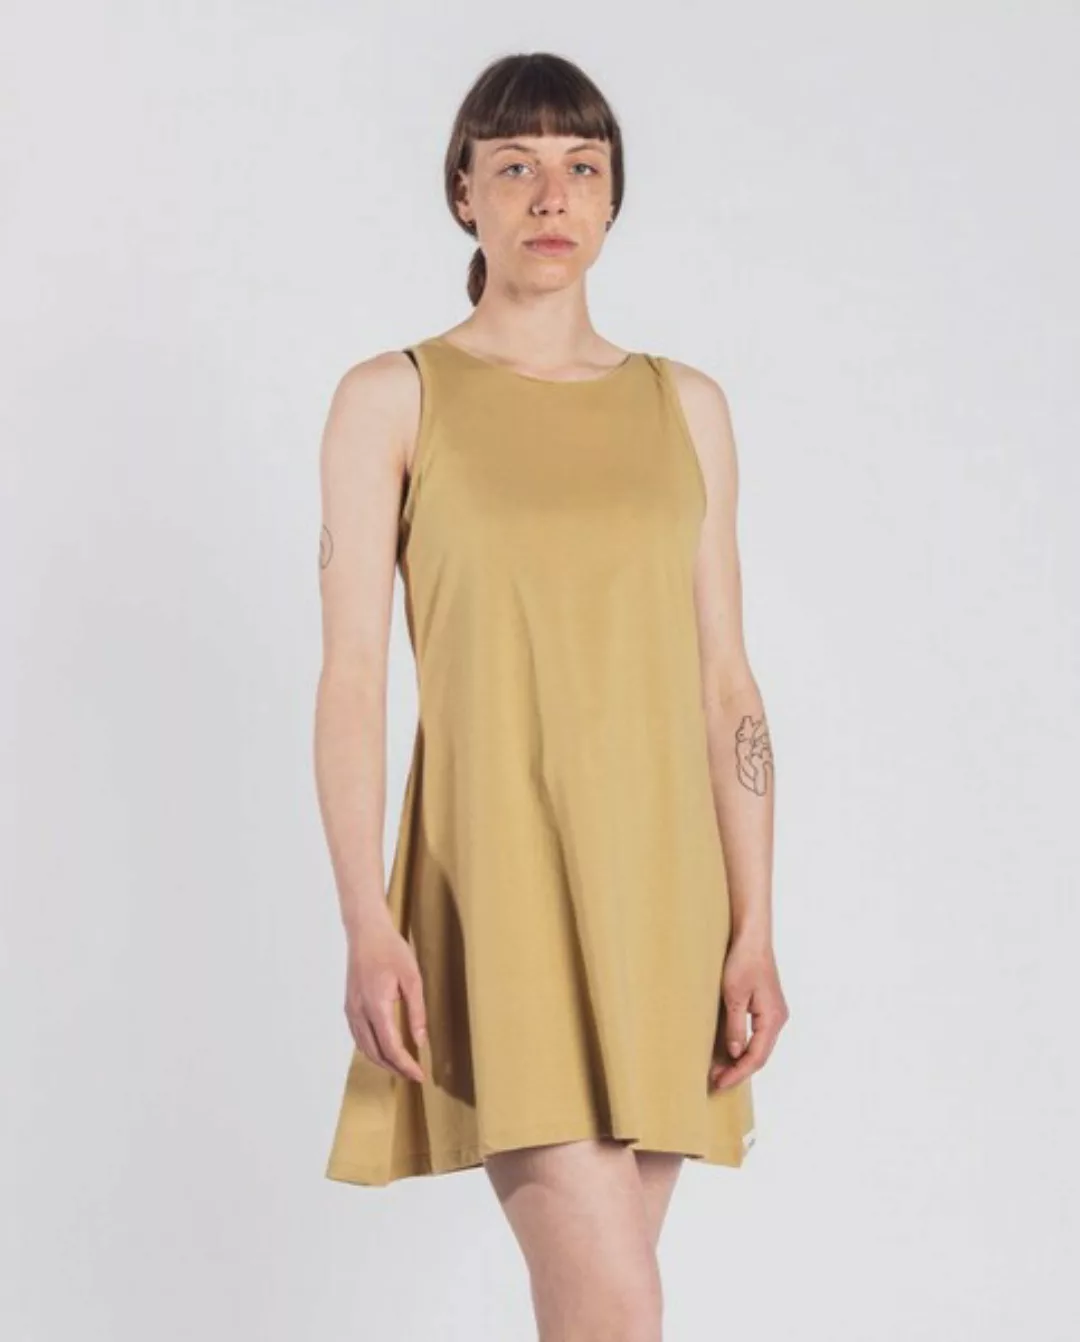 Damen Kleid Aus Bio-baumwolle - Kurz Jersey - Swing günstig online kaufen